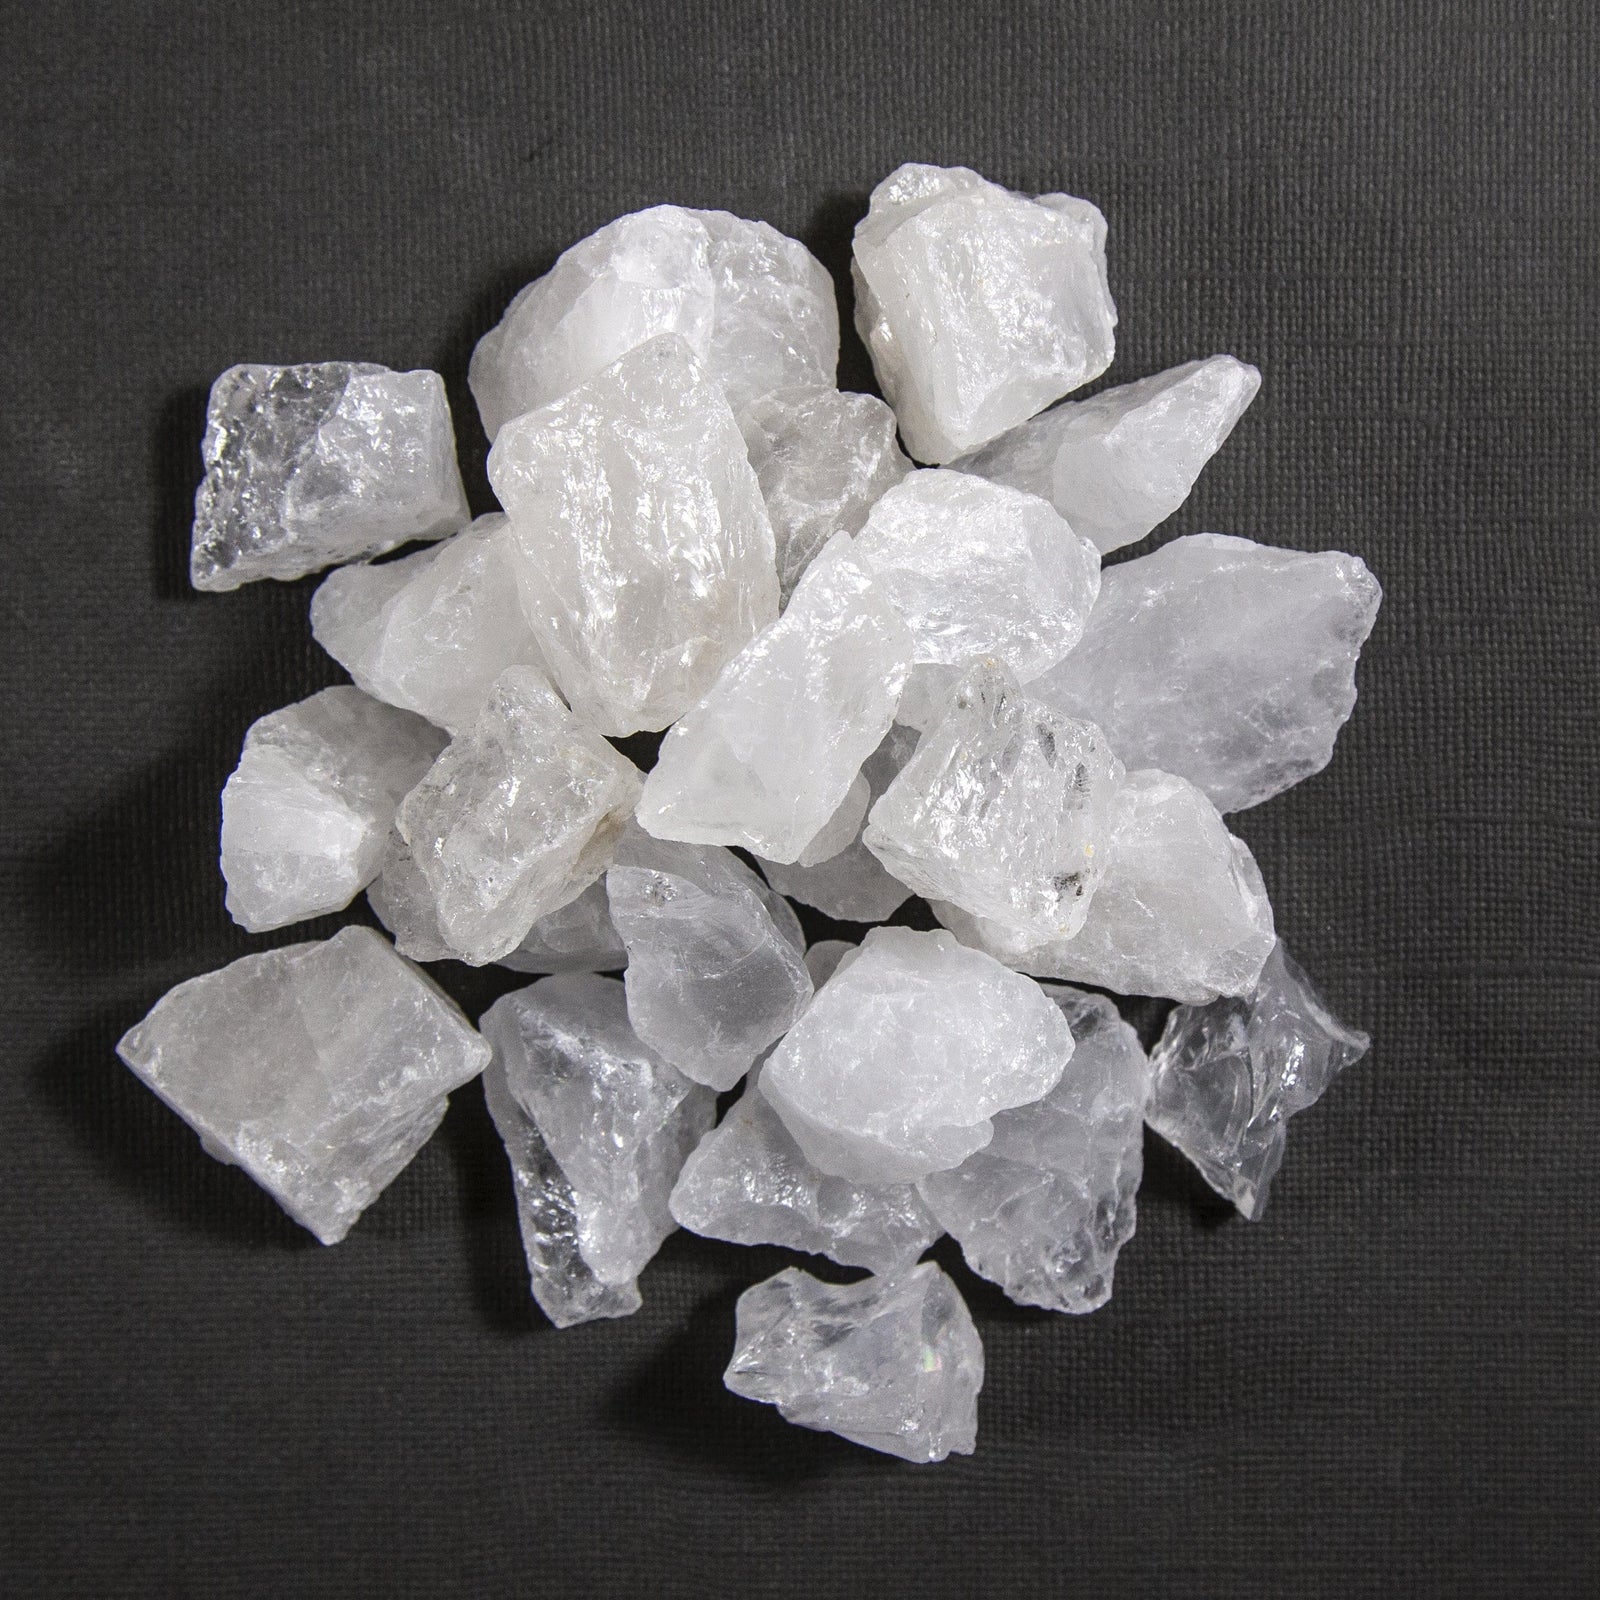 Crystal Quartz Rough Stones - 1 lb Bag - Raw Chunks Rough Stone (TS-16 ...